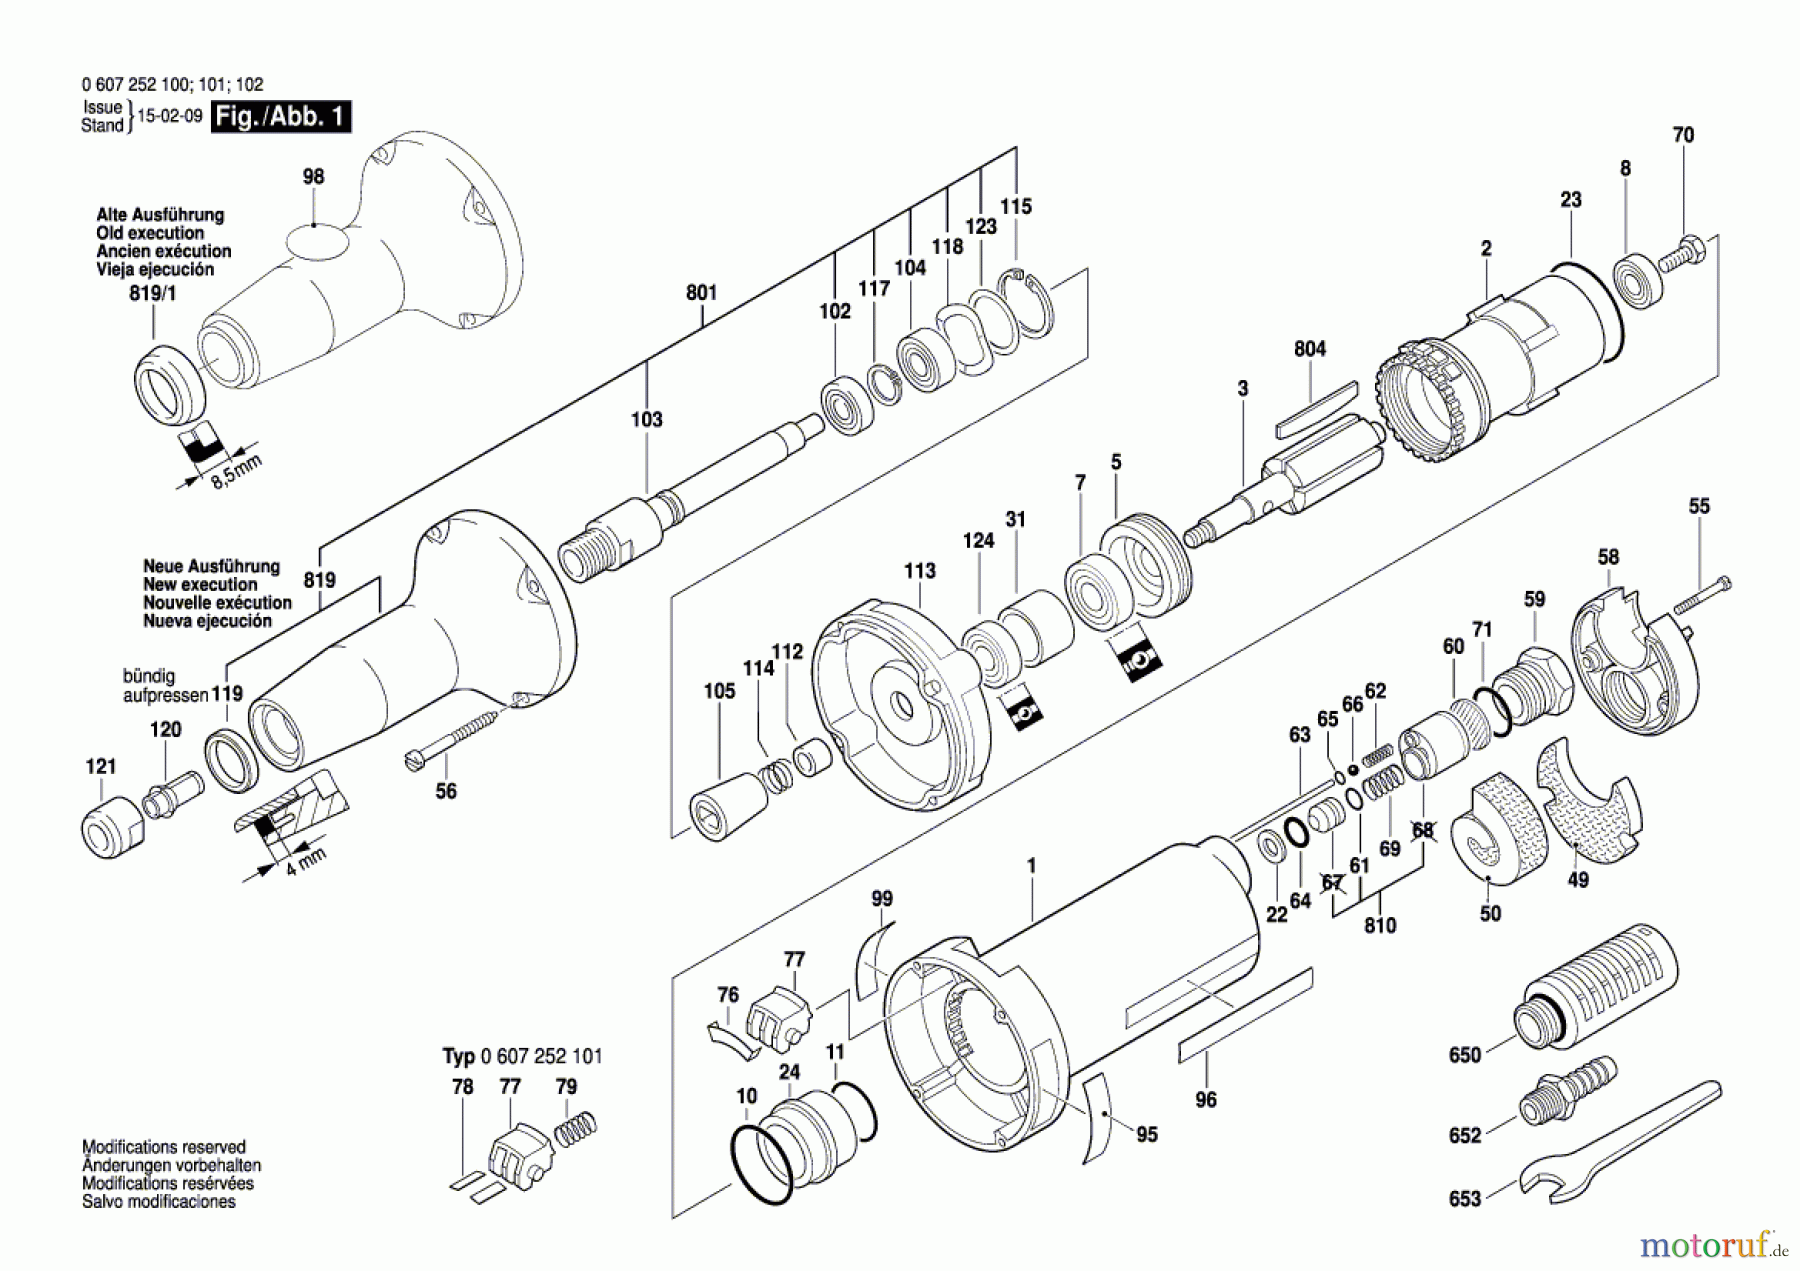  Bosch Werkzeug Hf-Geradschleifer GERADSCHLEIFER 550 WATT-SERIE Seite 1